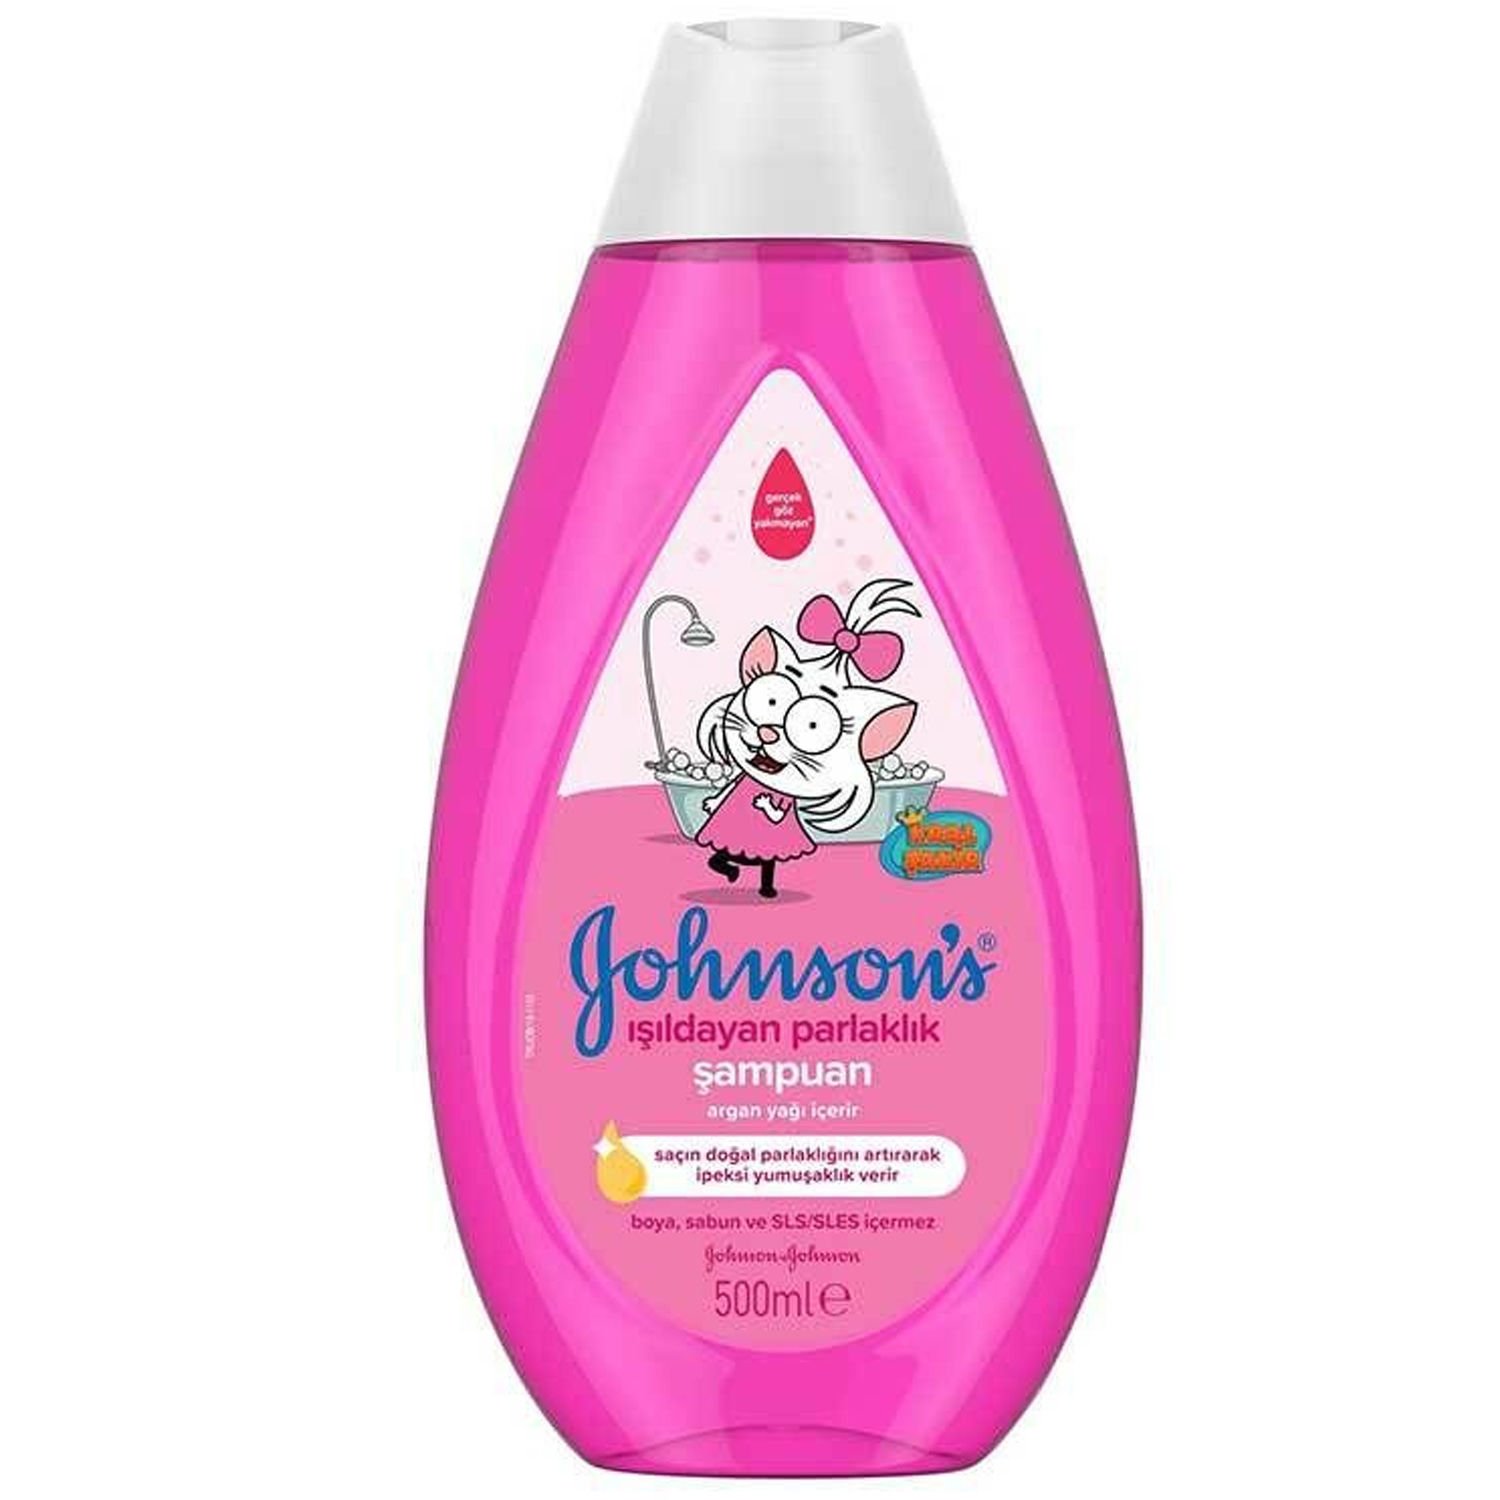 Johnsons Baby Kral Şakir Işıldayan Parlaklık Şampuan 500 ml